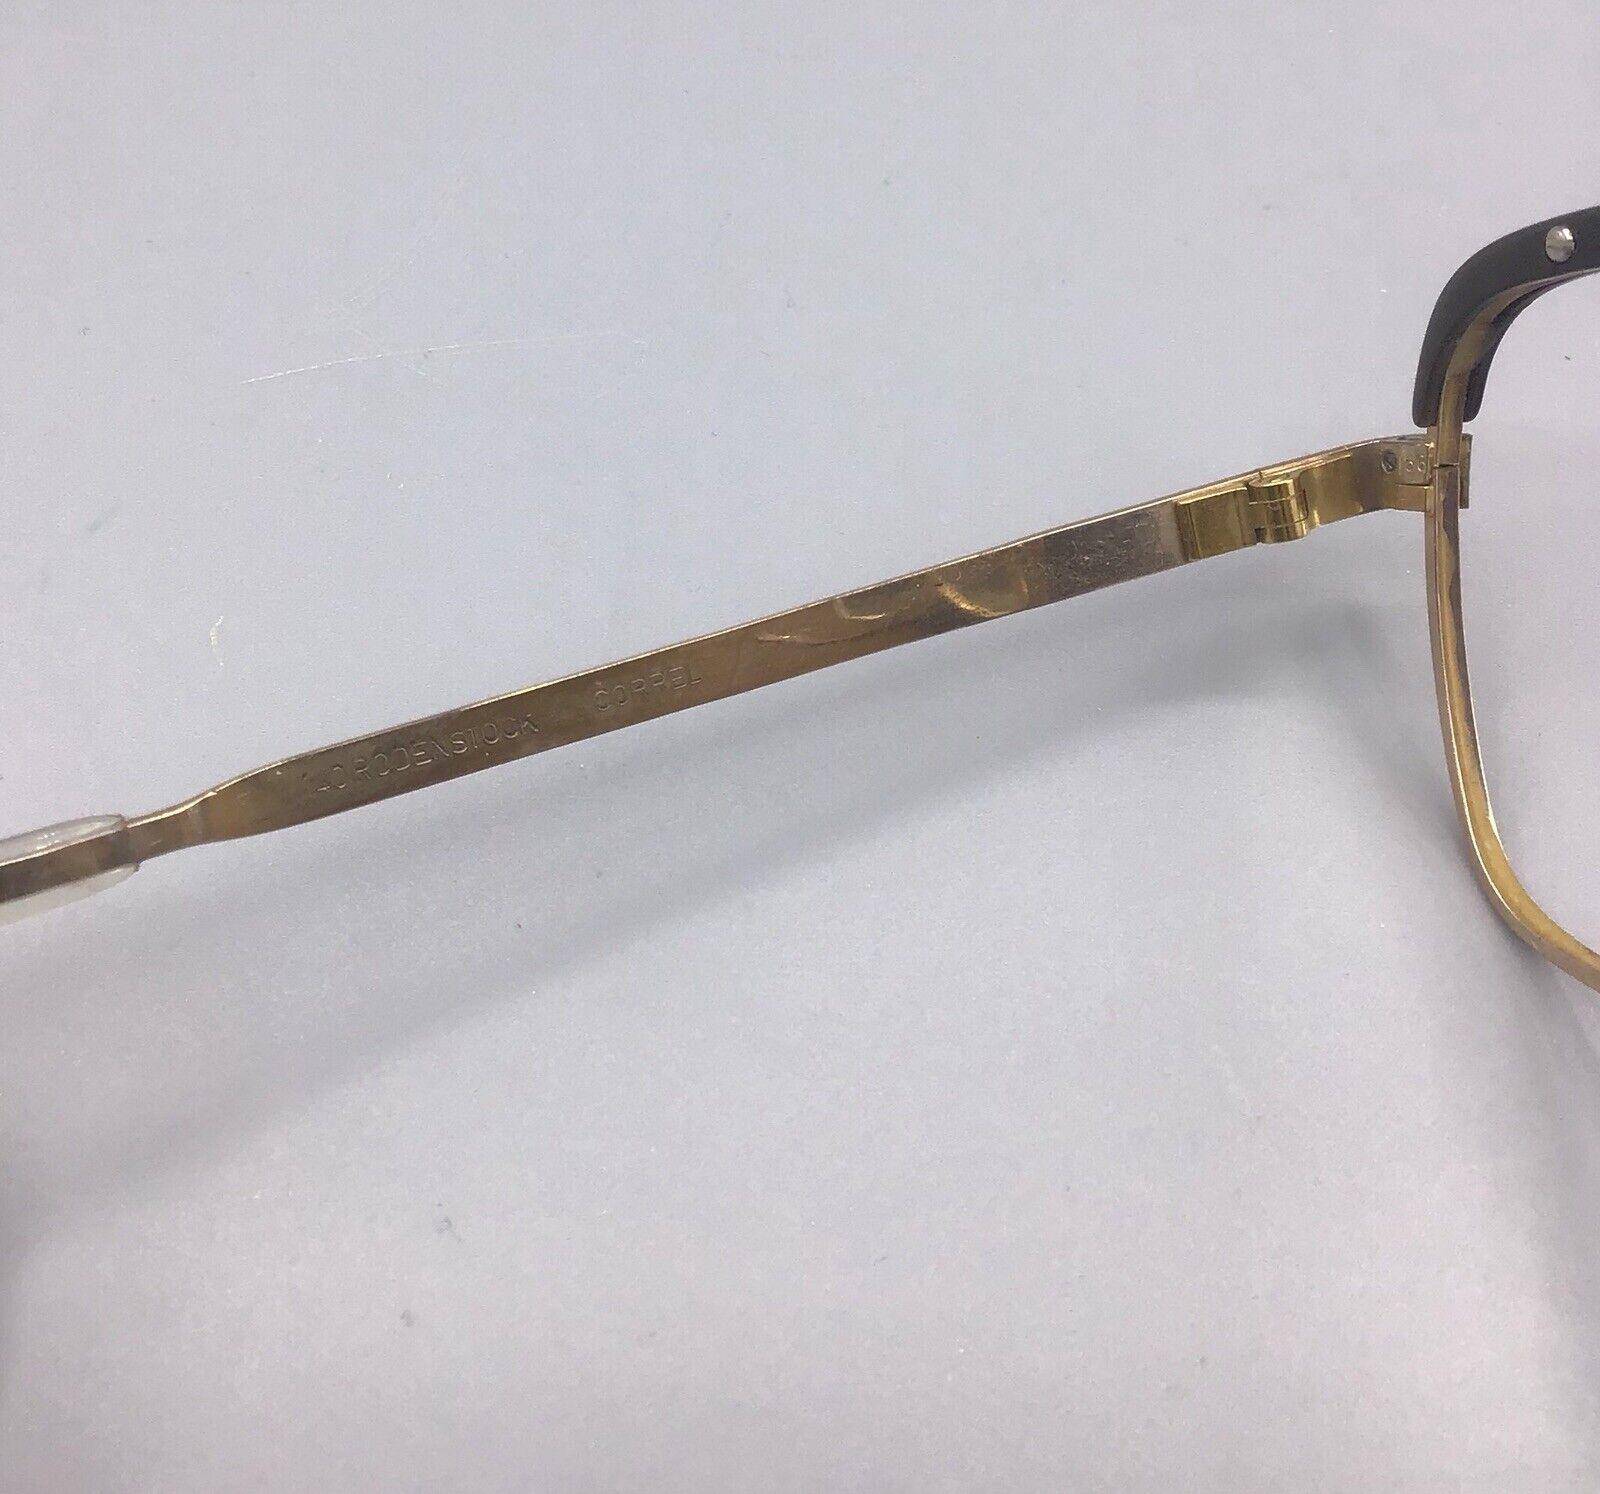 Rodenstock 1/20 12k correl occhiale vintage brillen eyewear lunettes